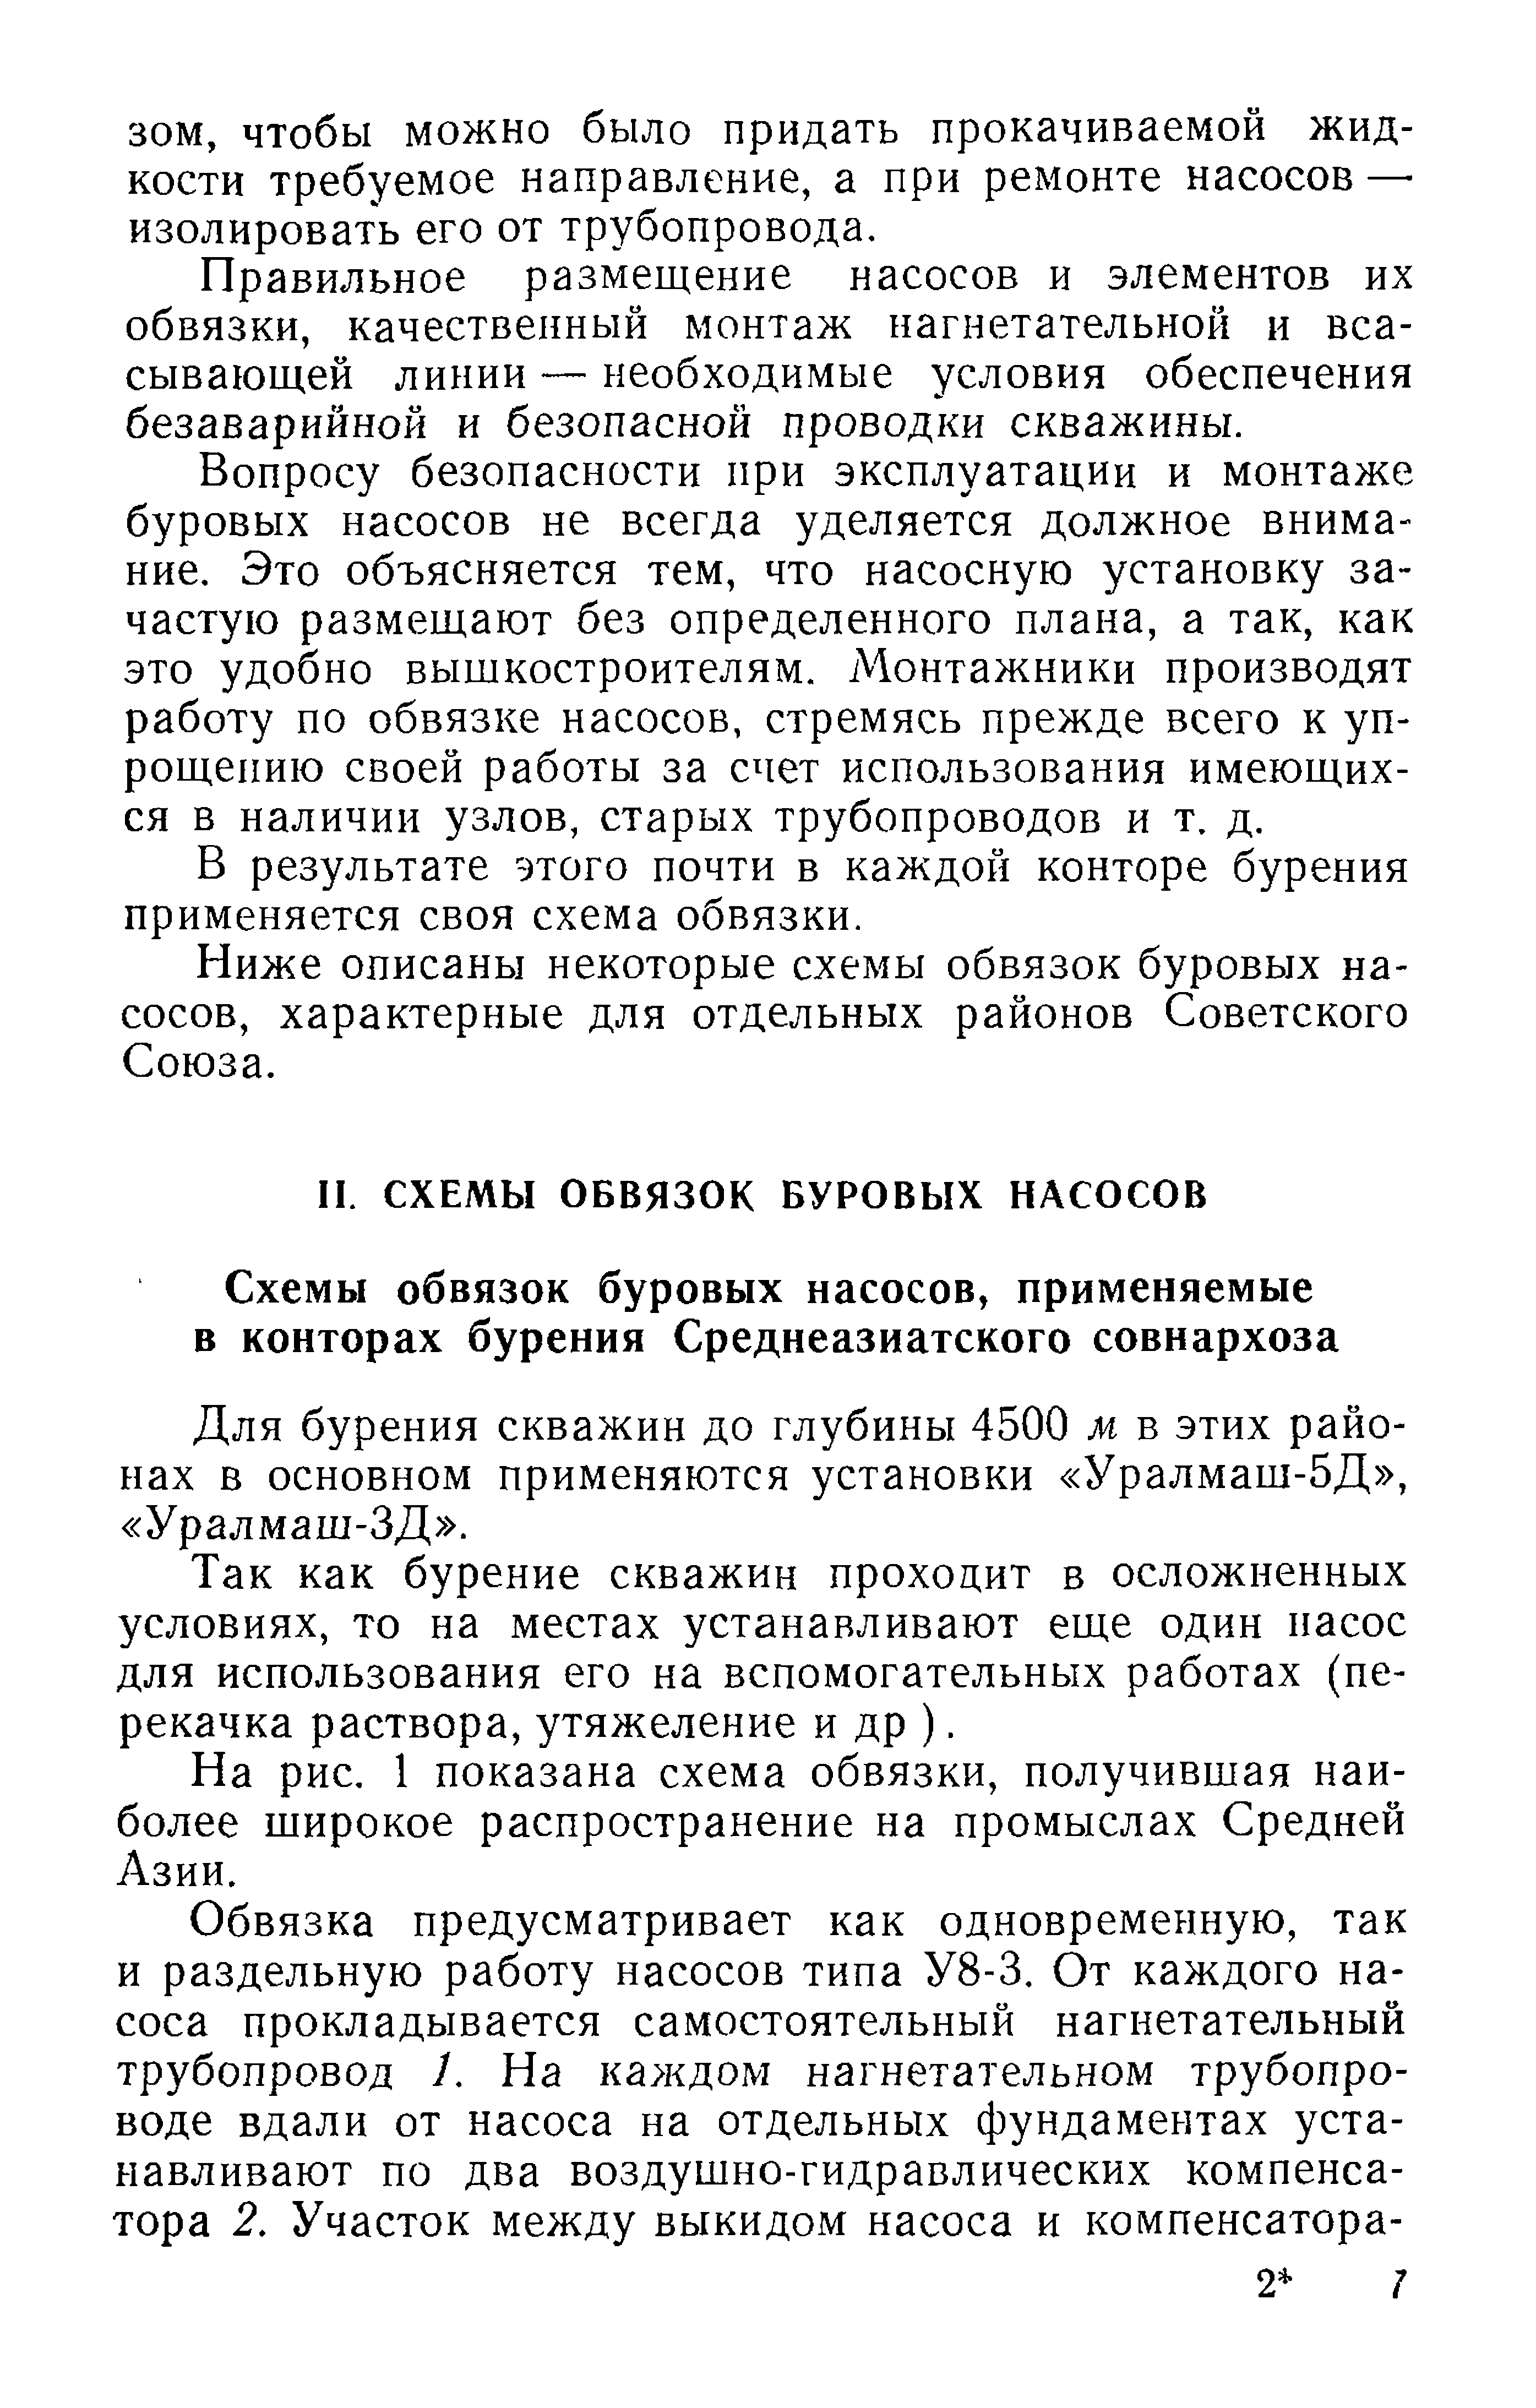 Ниже описаны некоторые схемы обвязок буровых насосов, характерные для отдельных районов Советского Союза.